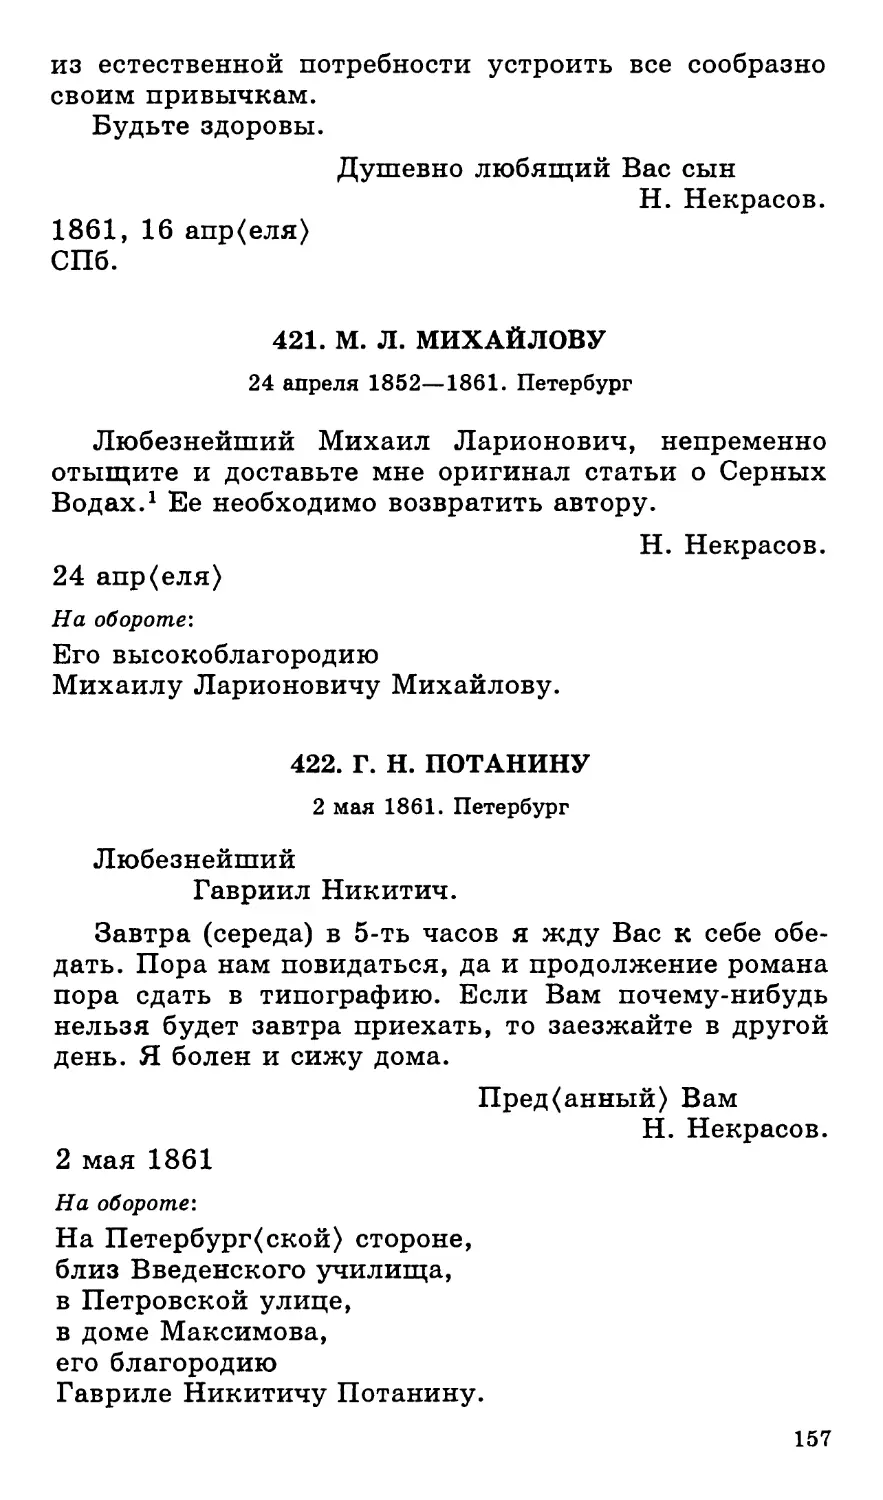 421.М. Л. Михайлову. 24 апреля 1852—1861
422.Г. Н. Потанину. 2 мая